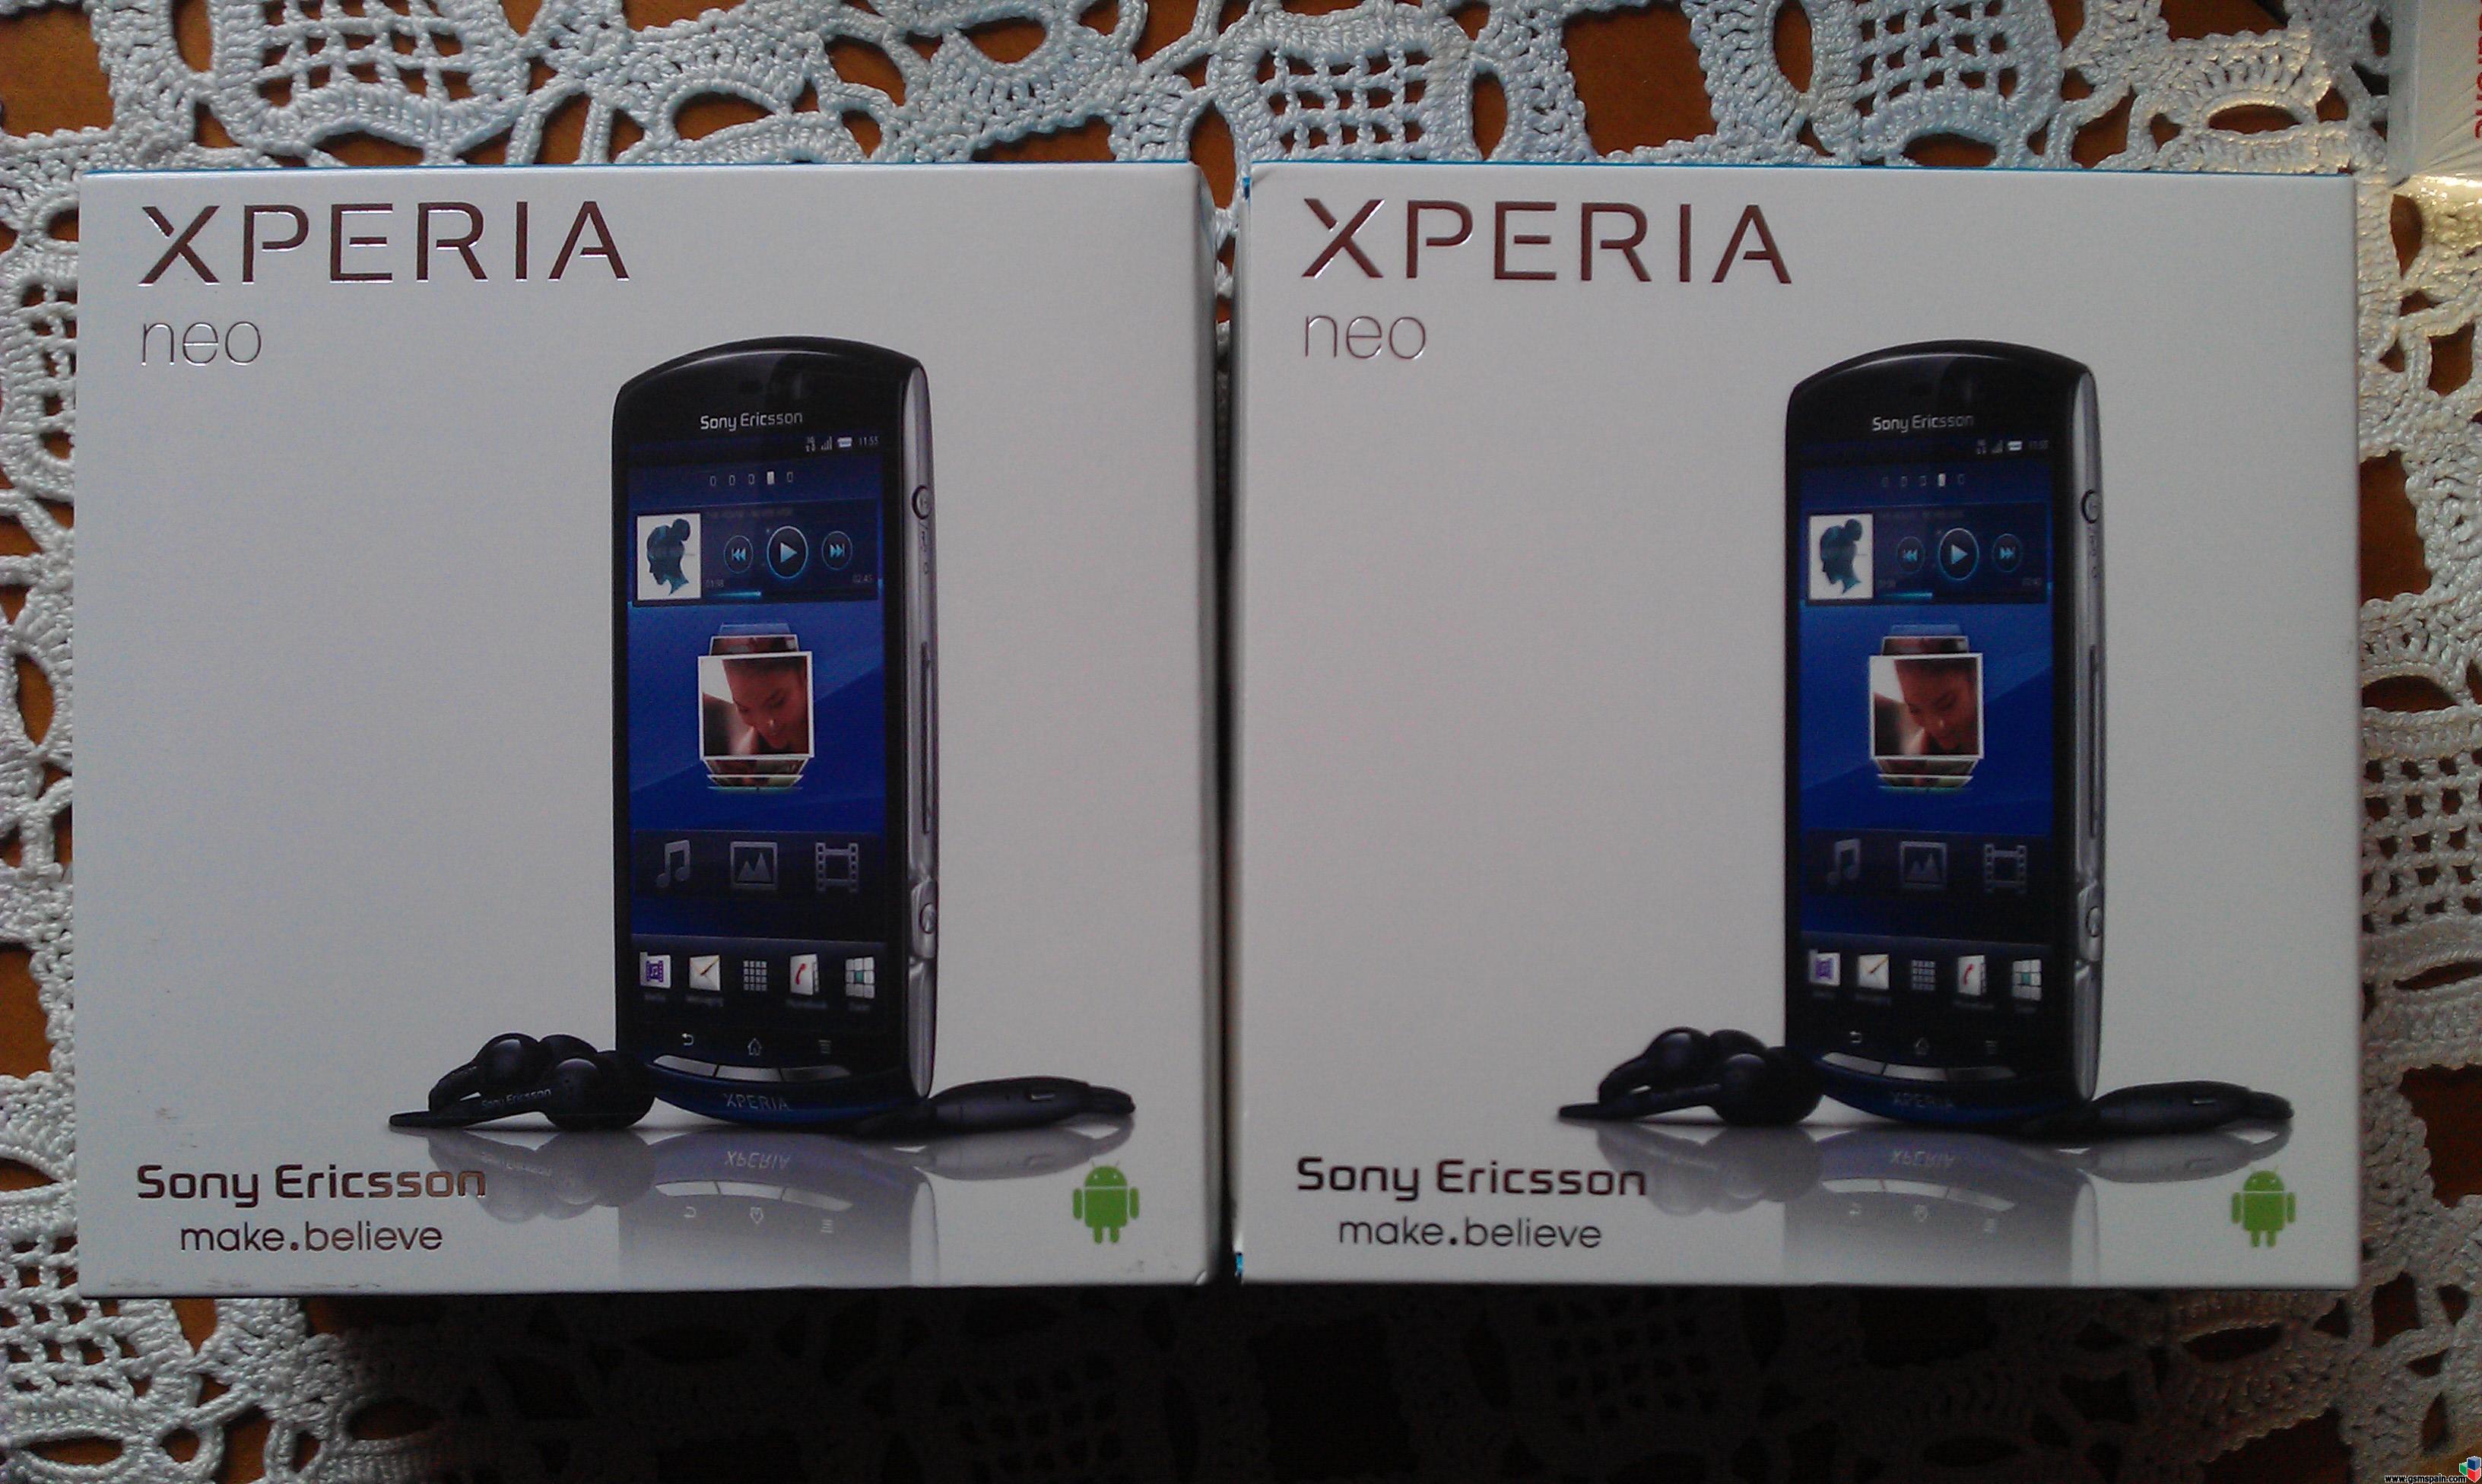 [VENDO] Sony Ericsson Xperia Neo nuevos a estrenar con factura.